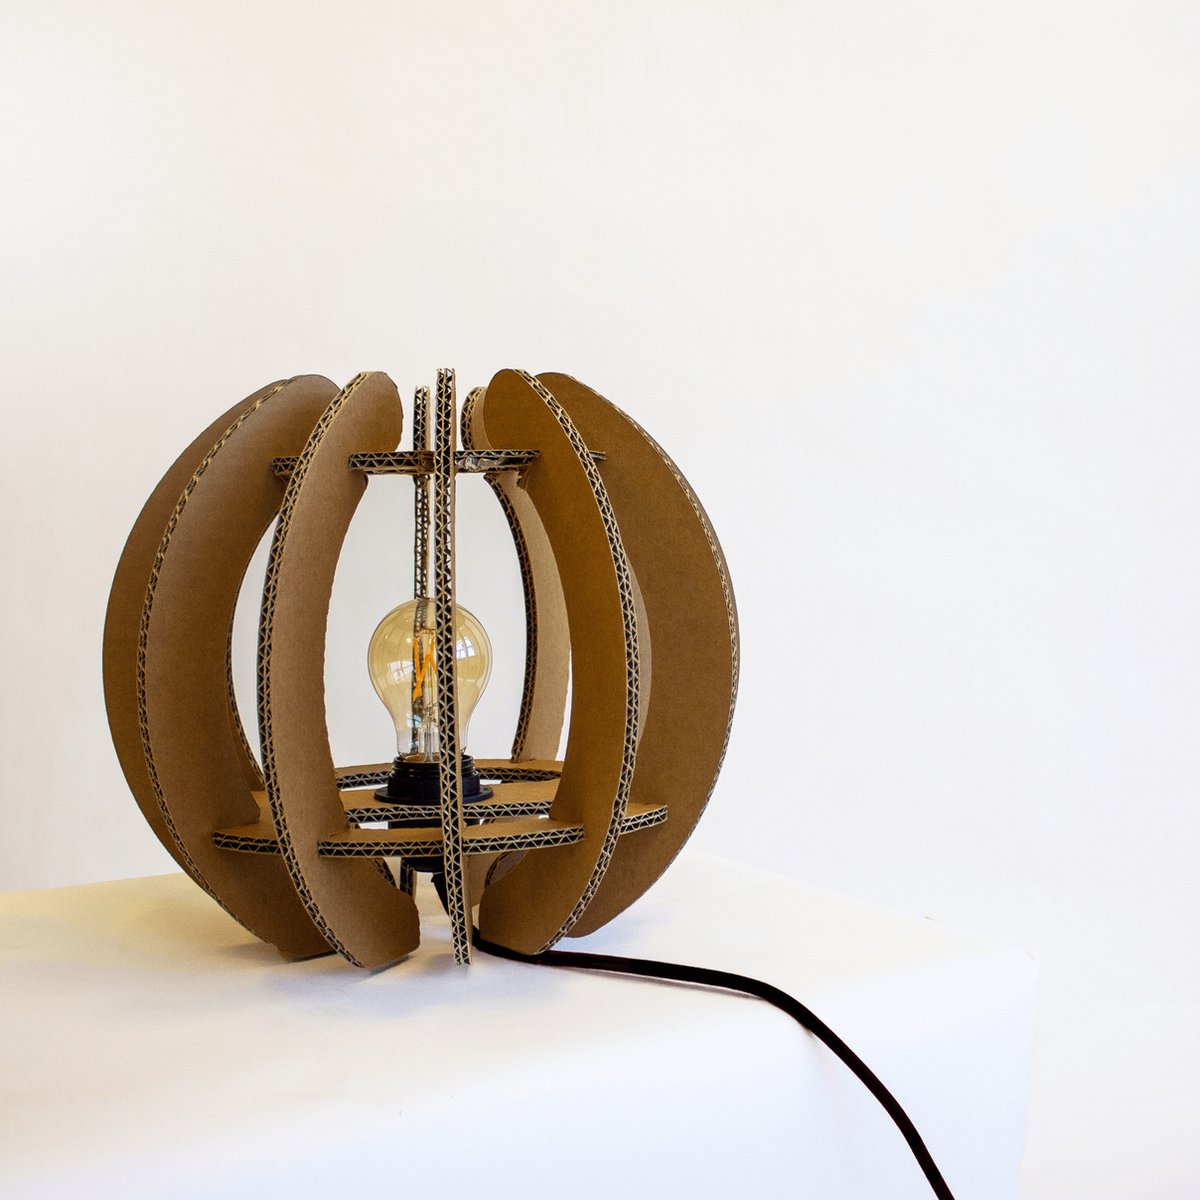 Kartonnen Skanderborg hanglamp - Hanglamp van karton - E27 fitting - 30x30x29 cm - Lampenkap - KarTent